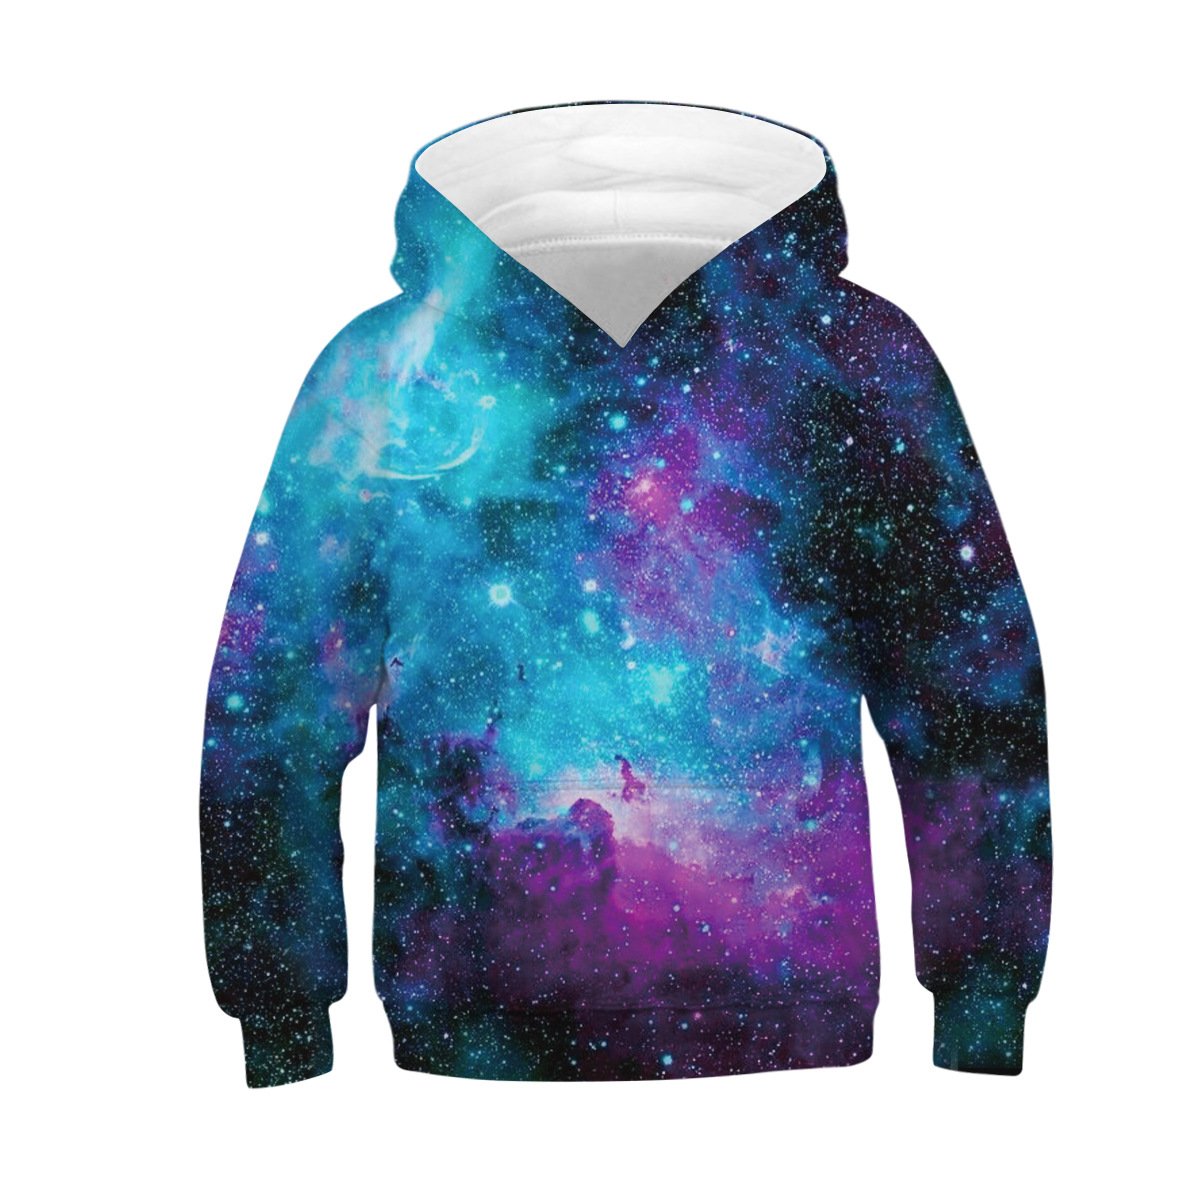 Unisex galaxy 3D Digital Print Pullover Hoodie Hooded Sweatshirt for boys and girls - mihoodie